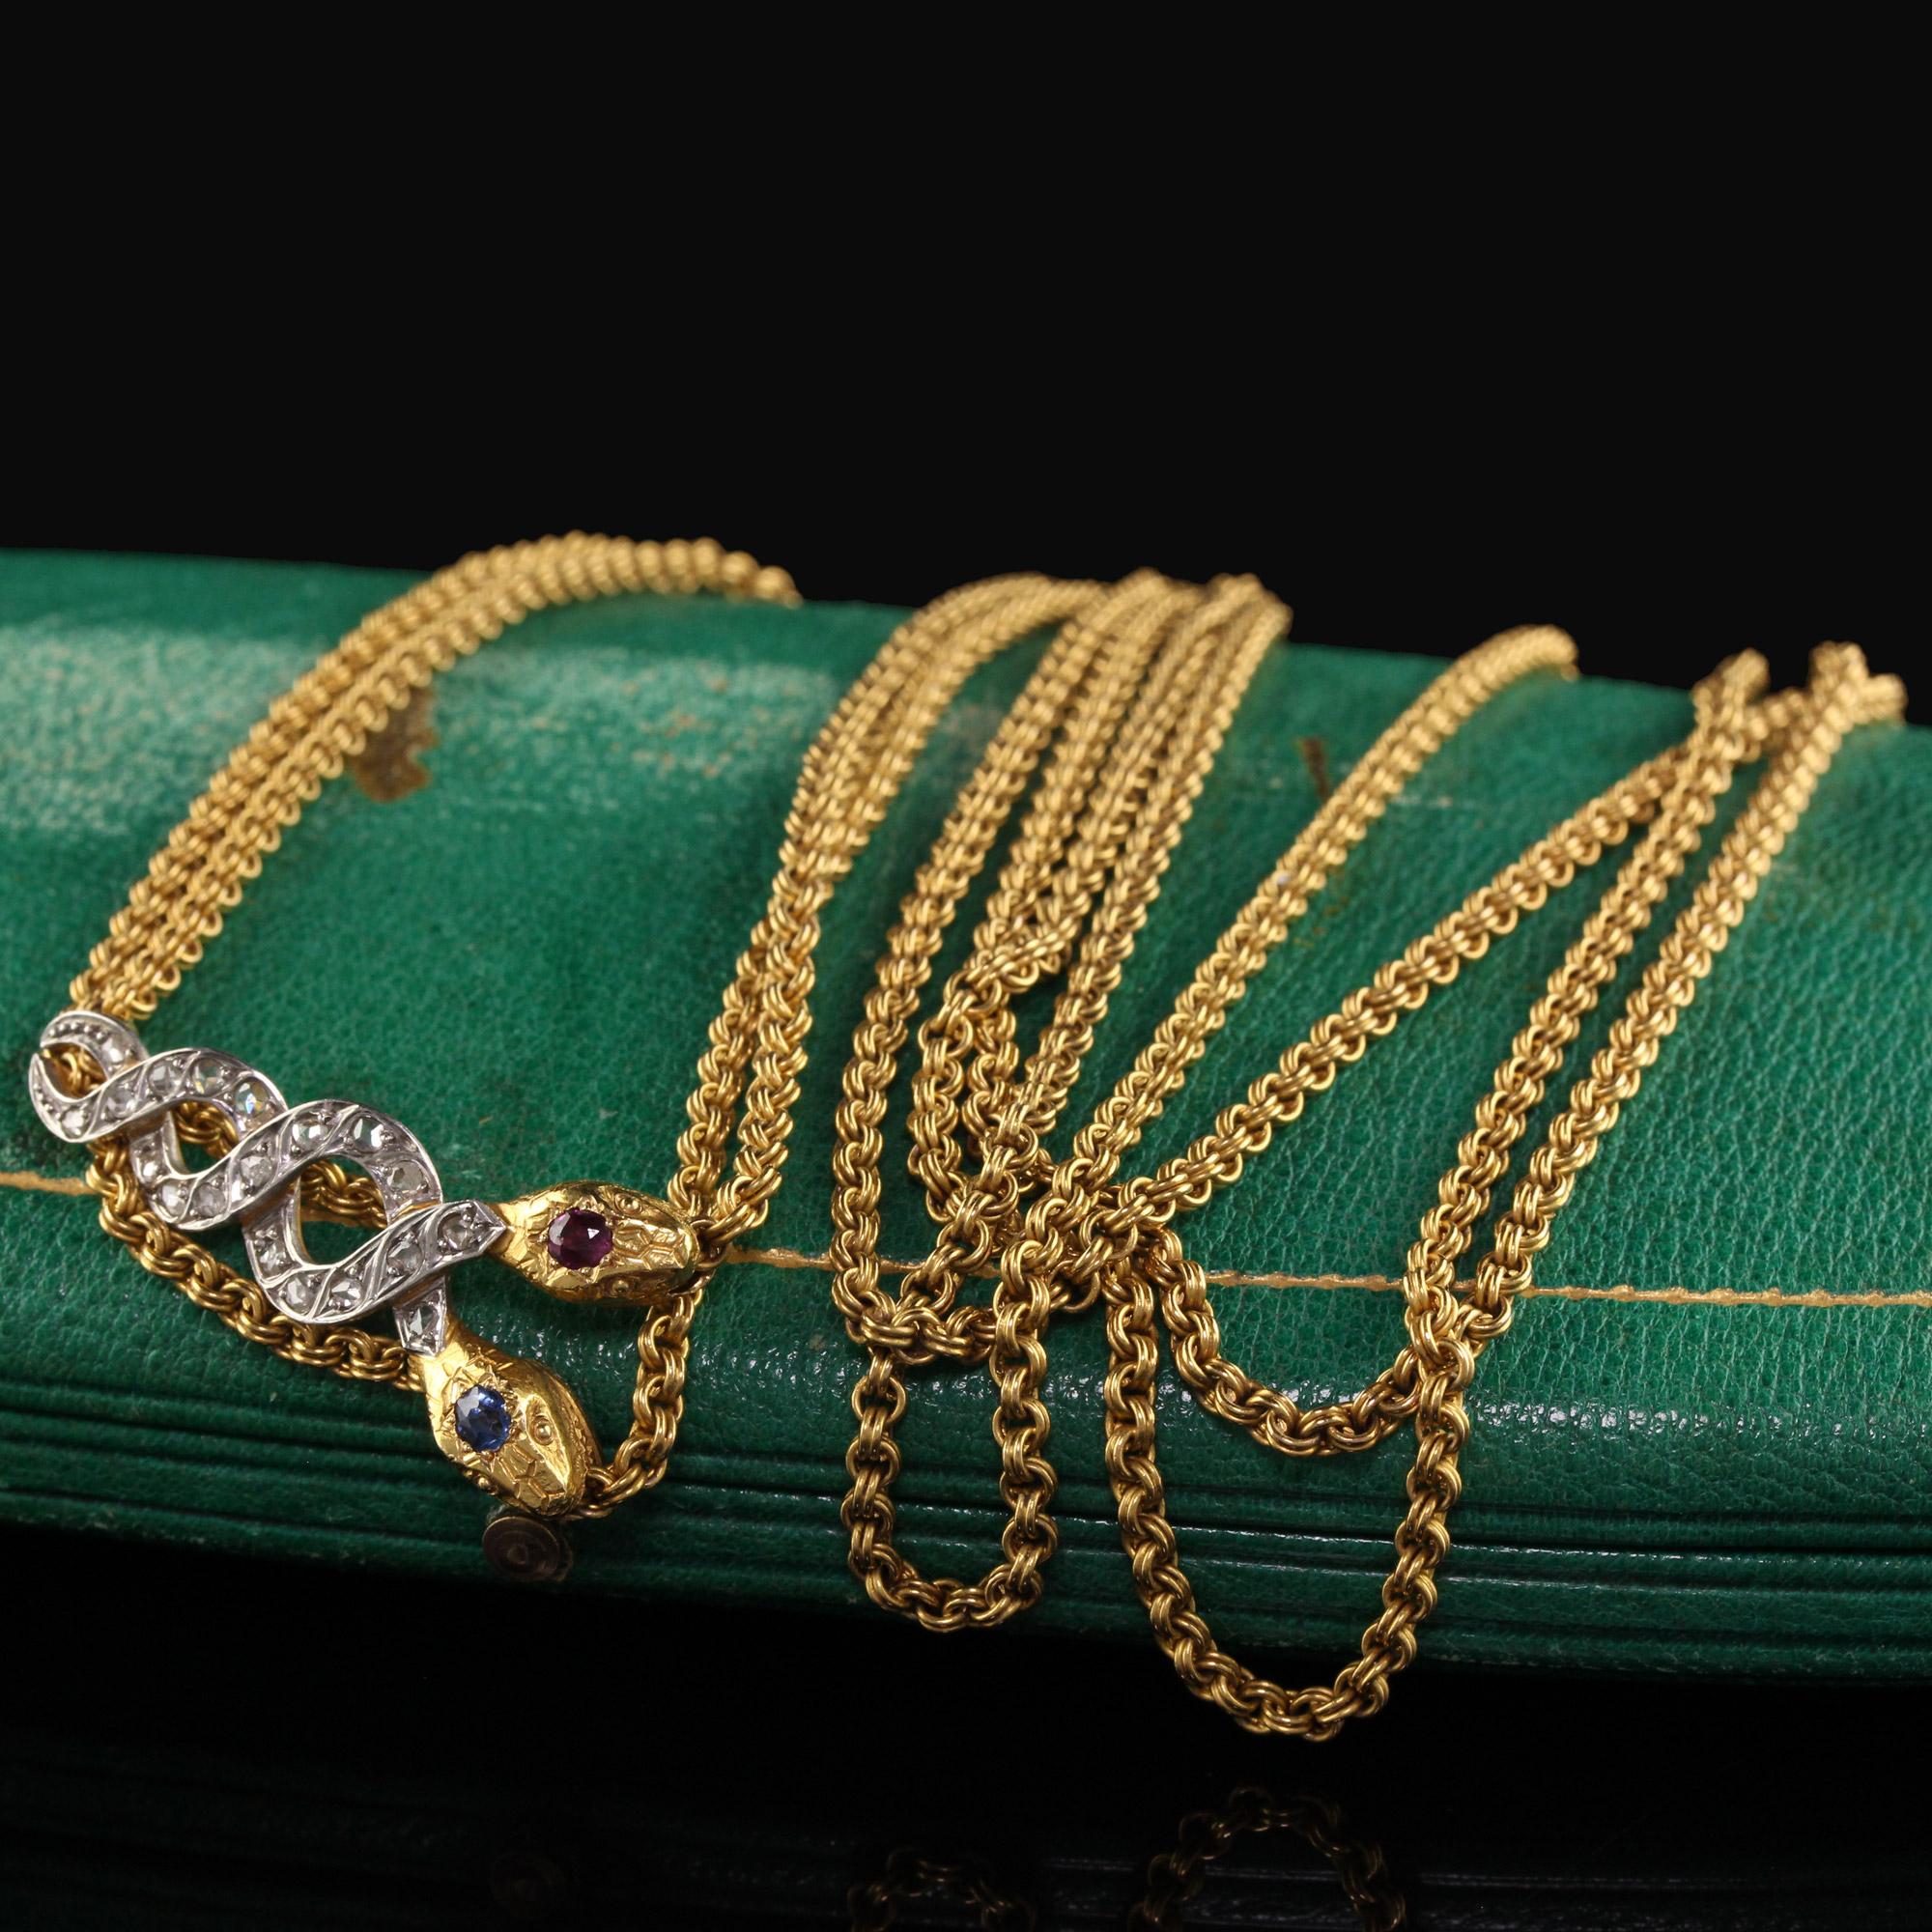 Schöne antike Edwardian 18K Gelbgold Rose Cut Diamond Ruby Sapphire Snake Halskette. Diese erstaunliche Schlangenhalskette ist aus 18k Gelbgold und Platin gefertigt. Die Halskette hat ein wunderschönes Gliederdesign mit einer doppelköpfigen